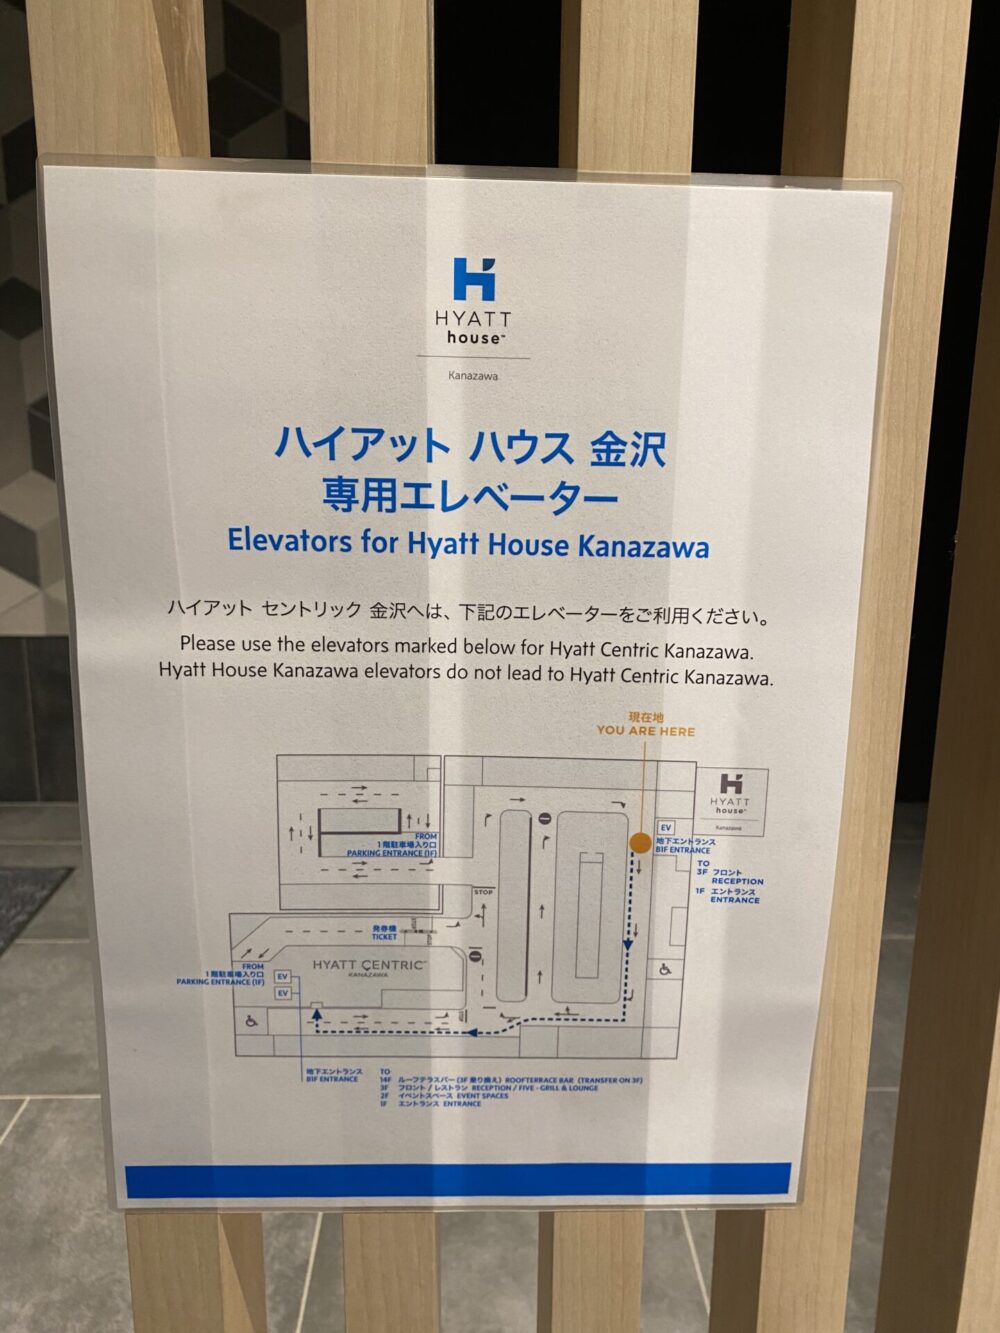 ハイアットーハウスー金沢ー専用エレベーター駐車場